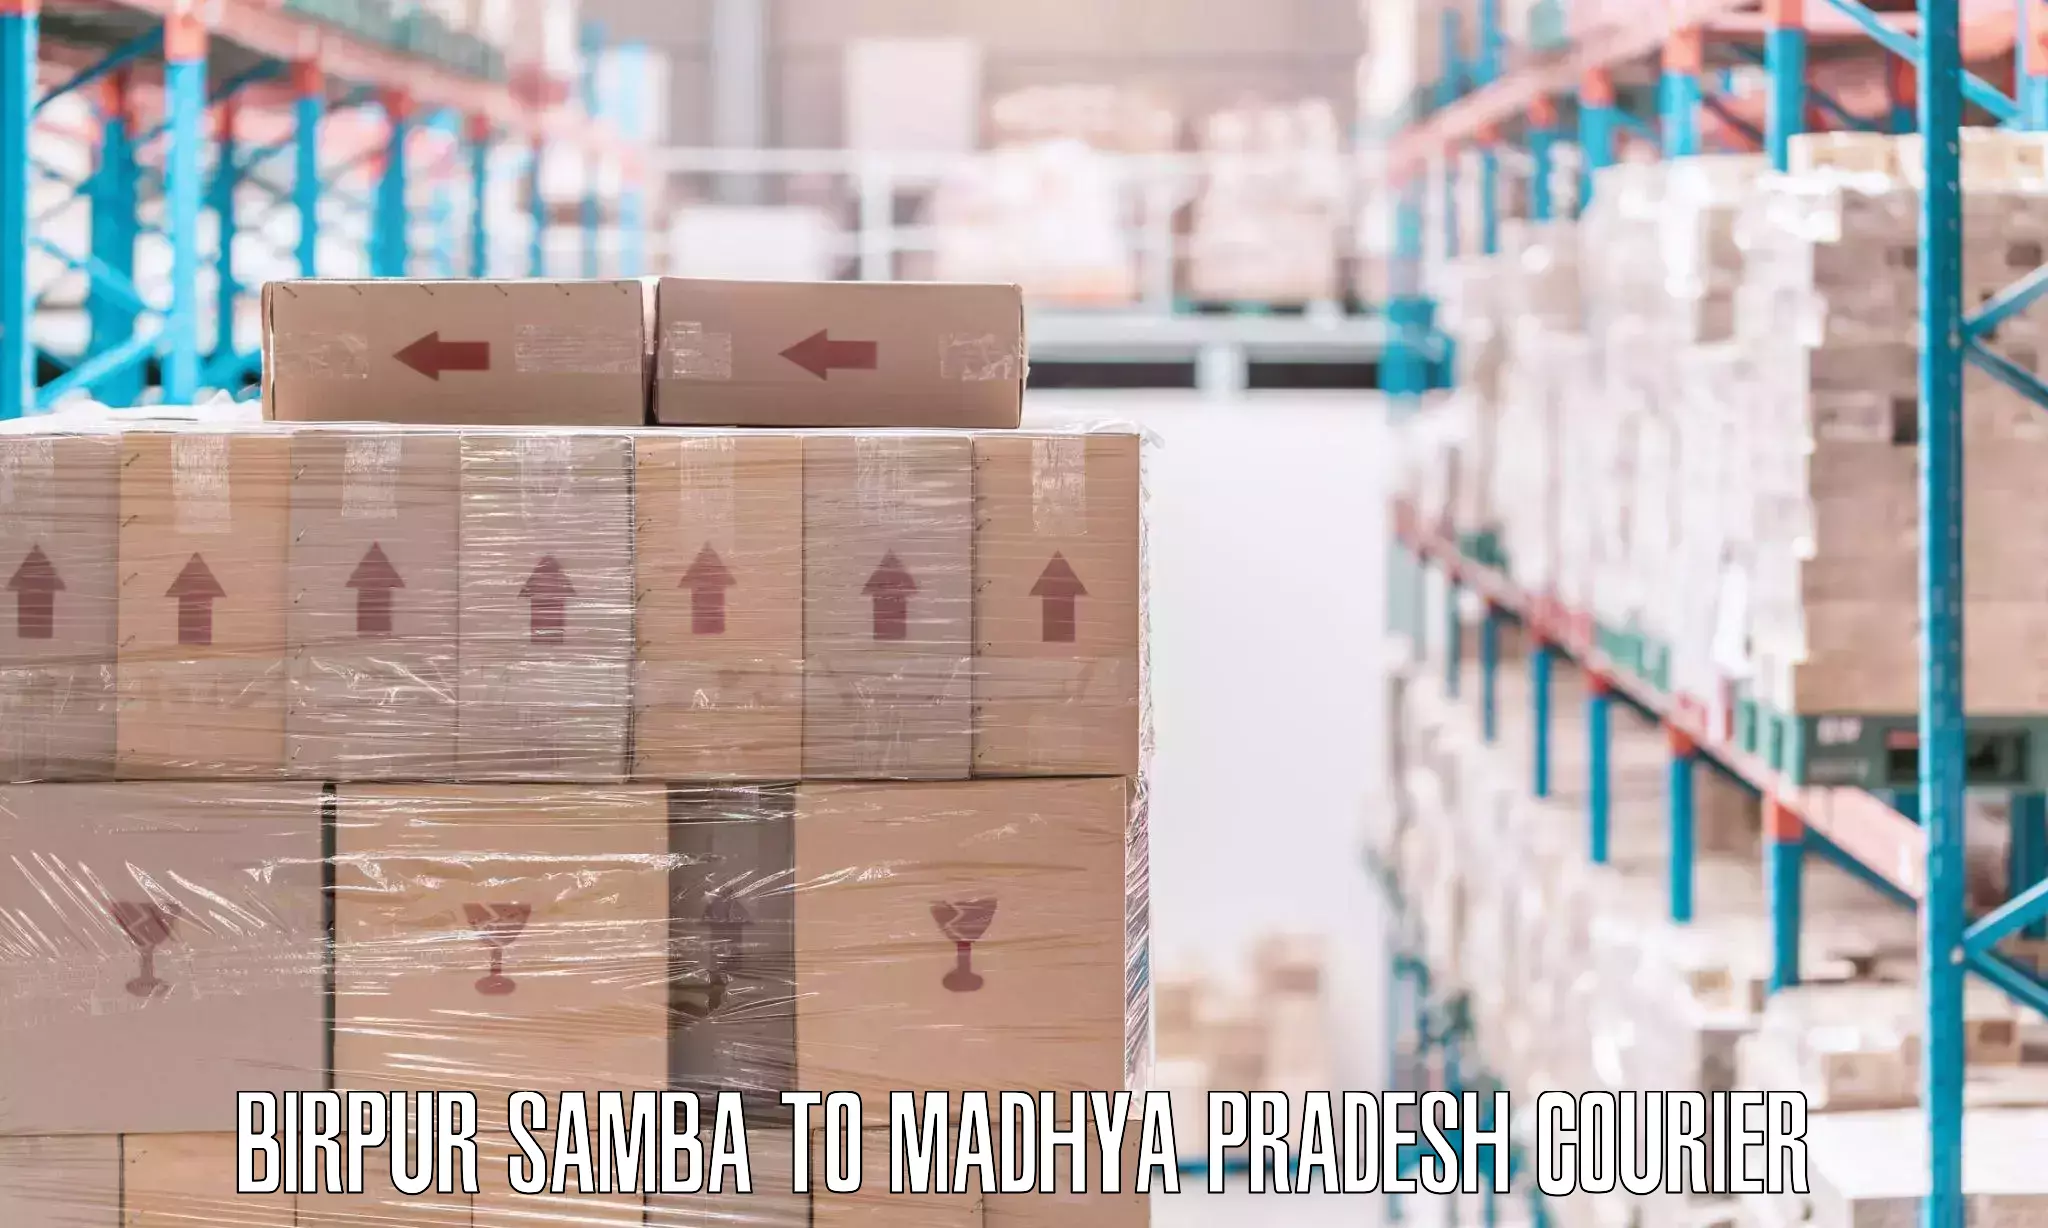 Professional movers and packers Birpur Samba to Mandsaur